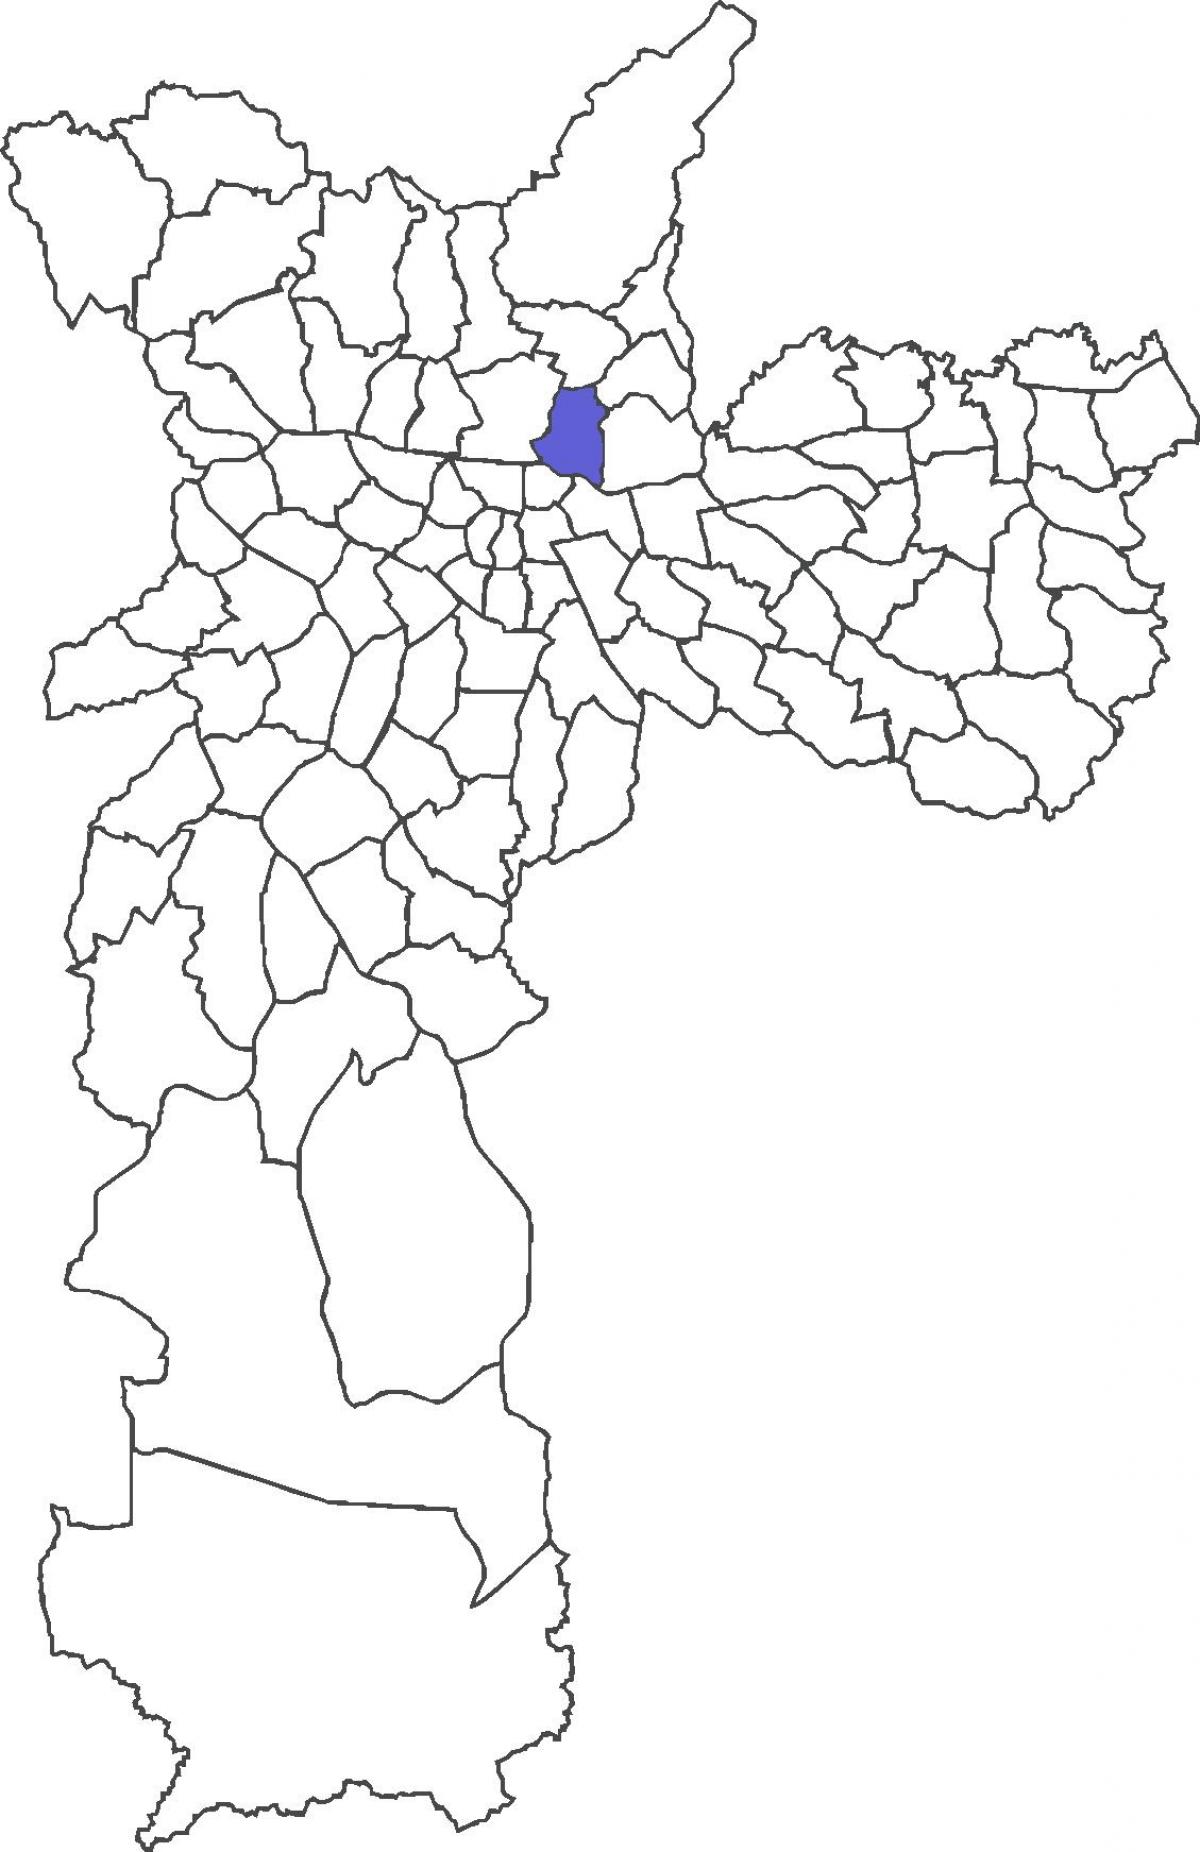 Карта раён Віла Гильерне